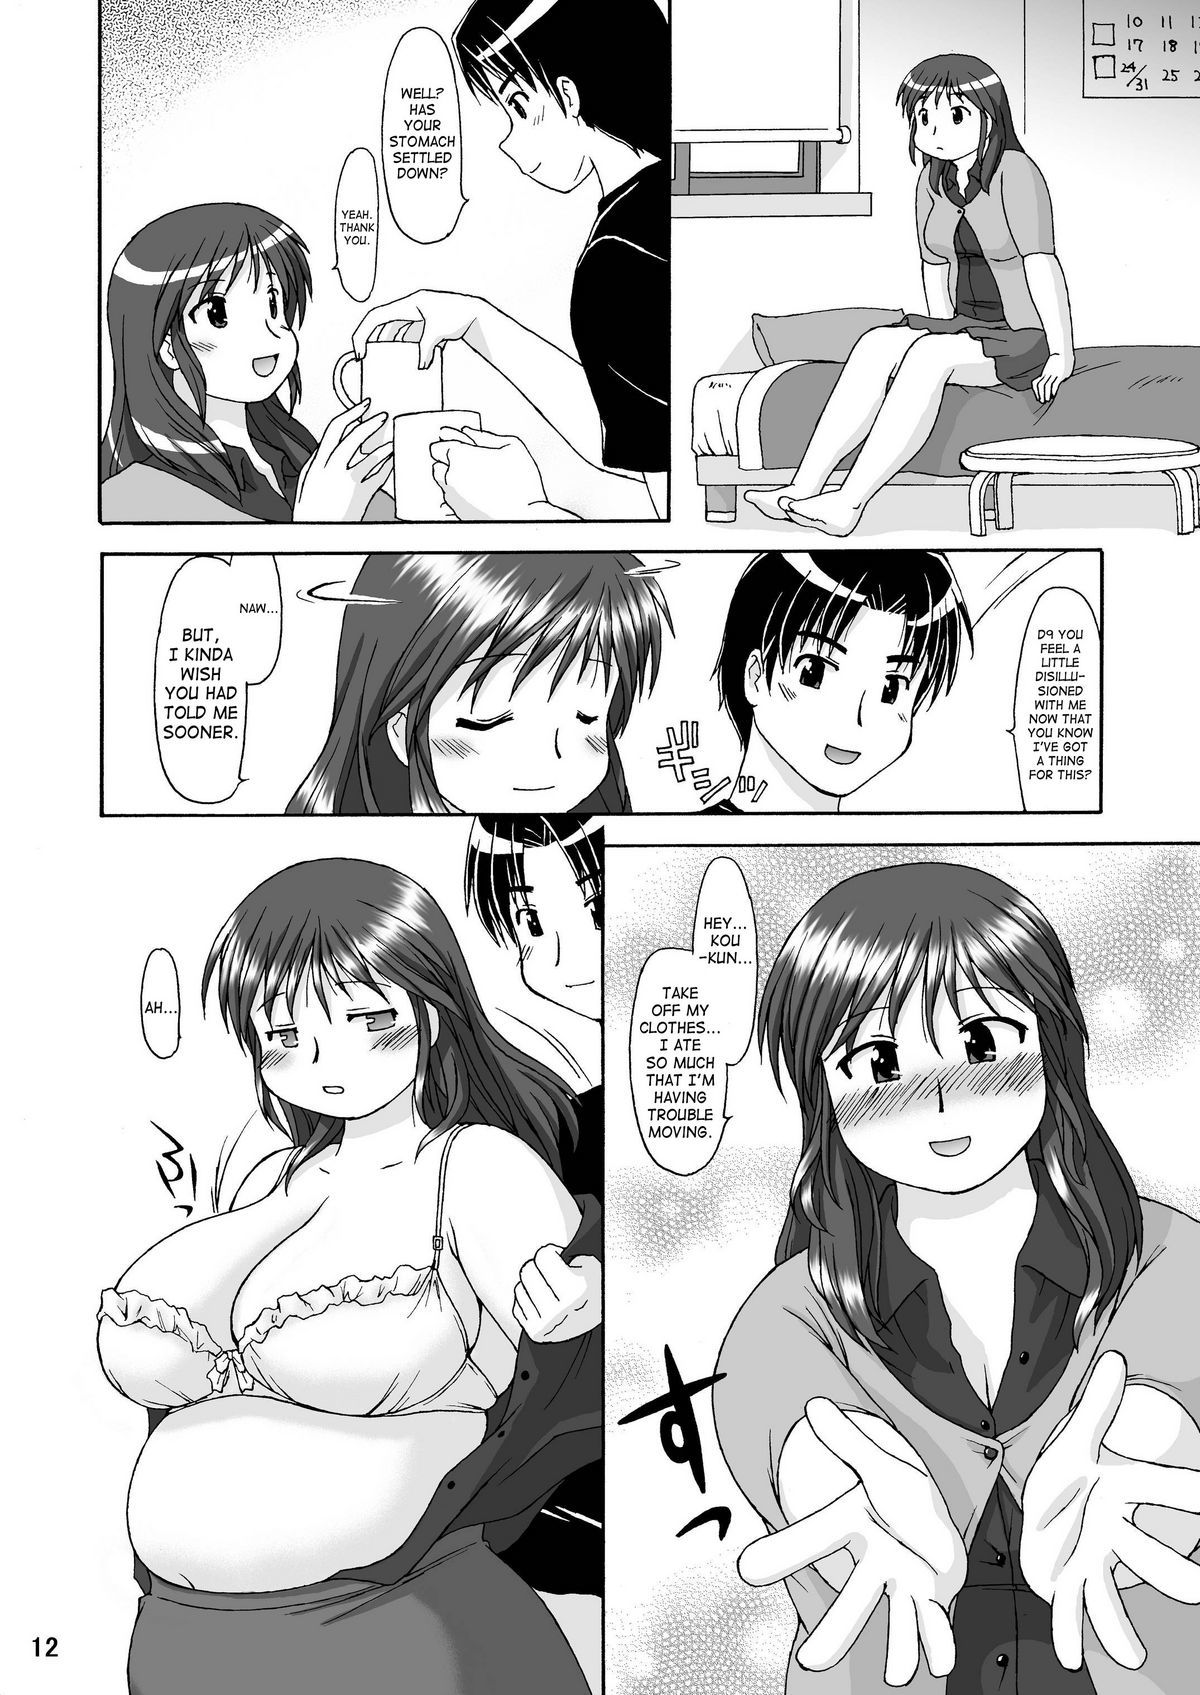 RIGHT STUFF original 10 hentai manga